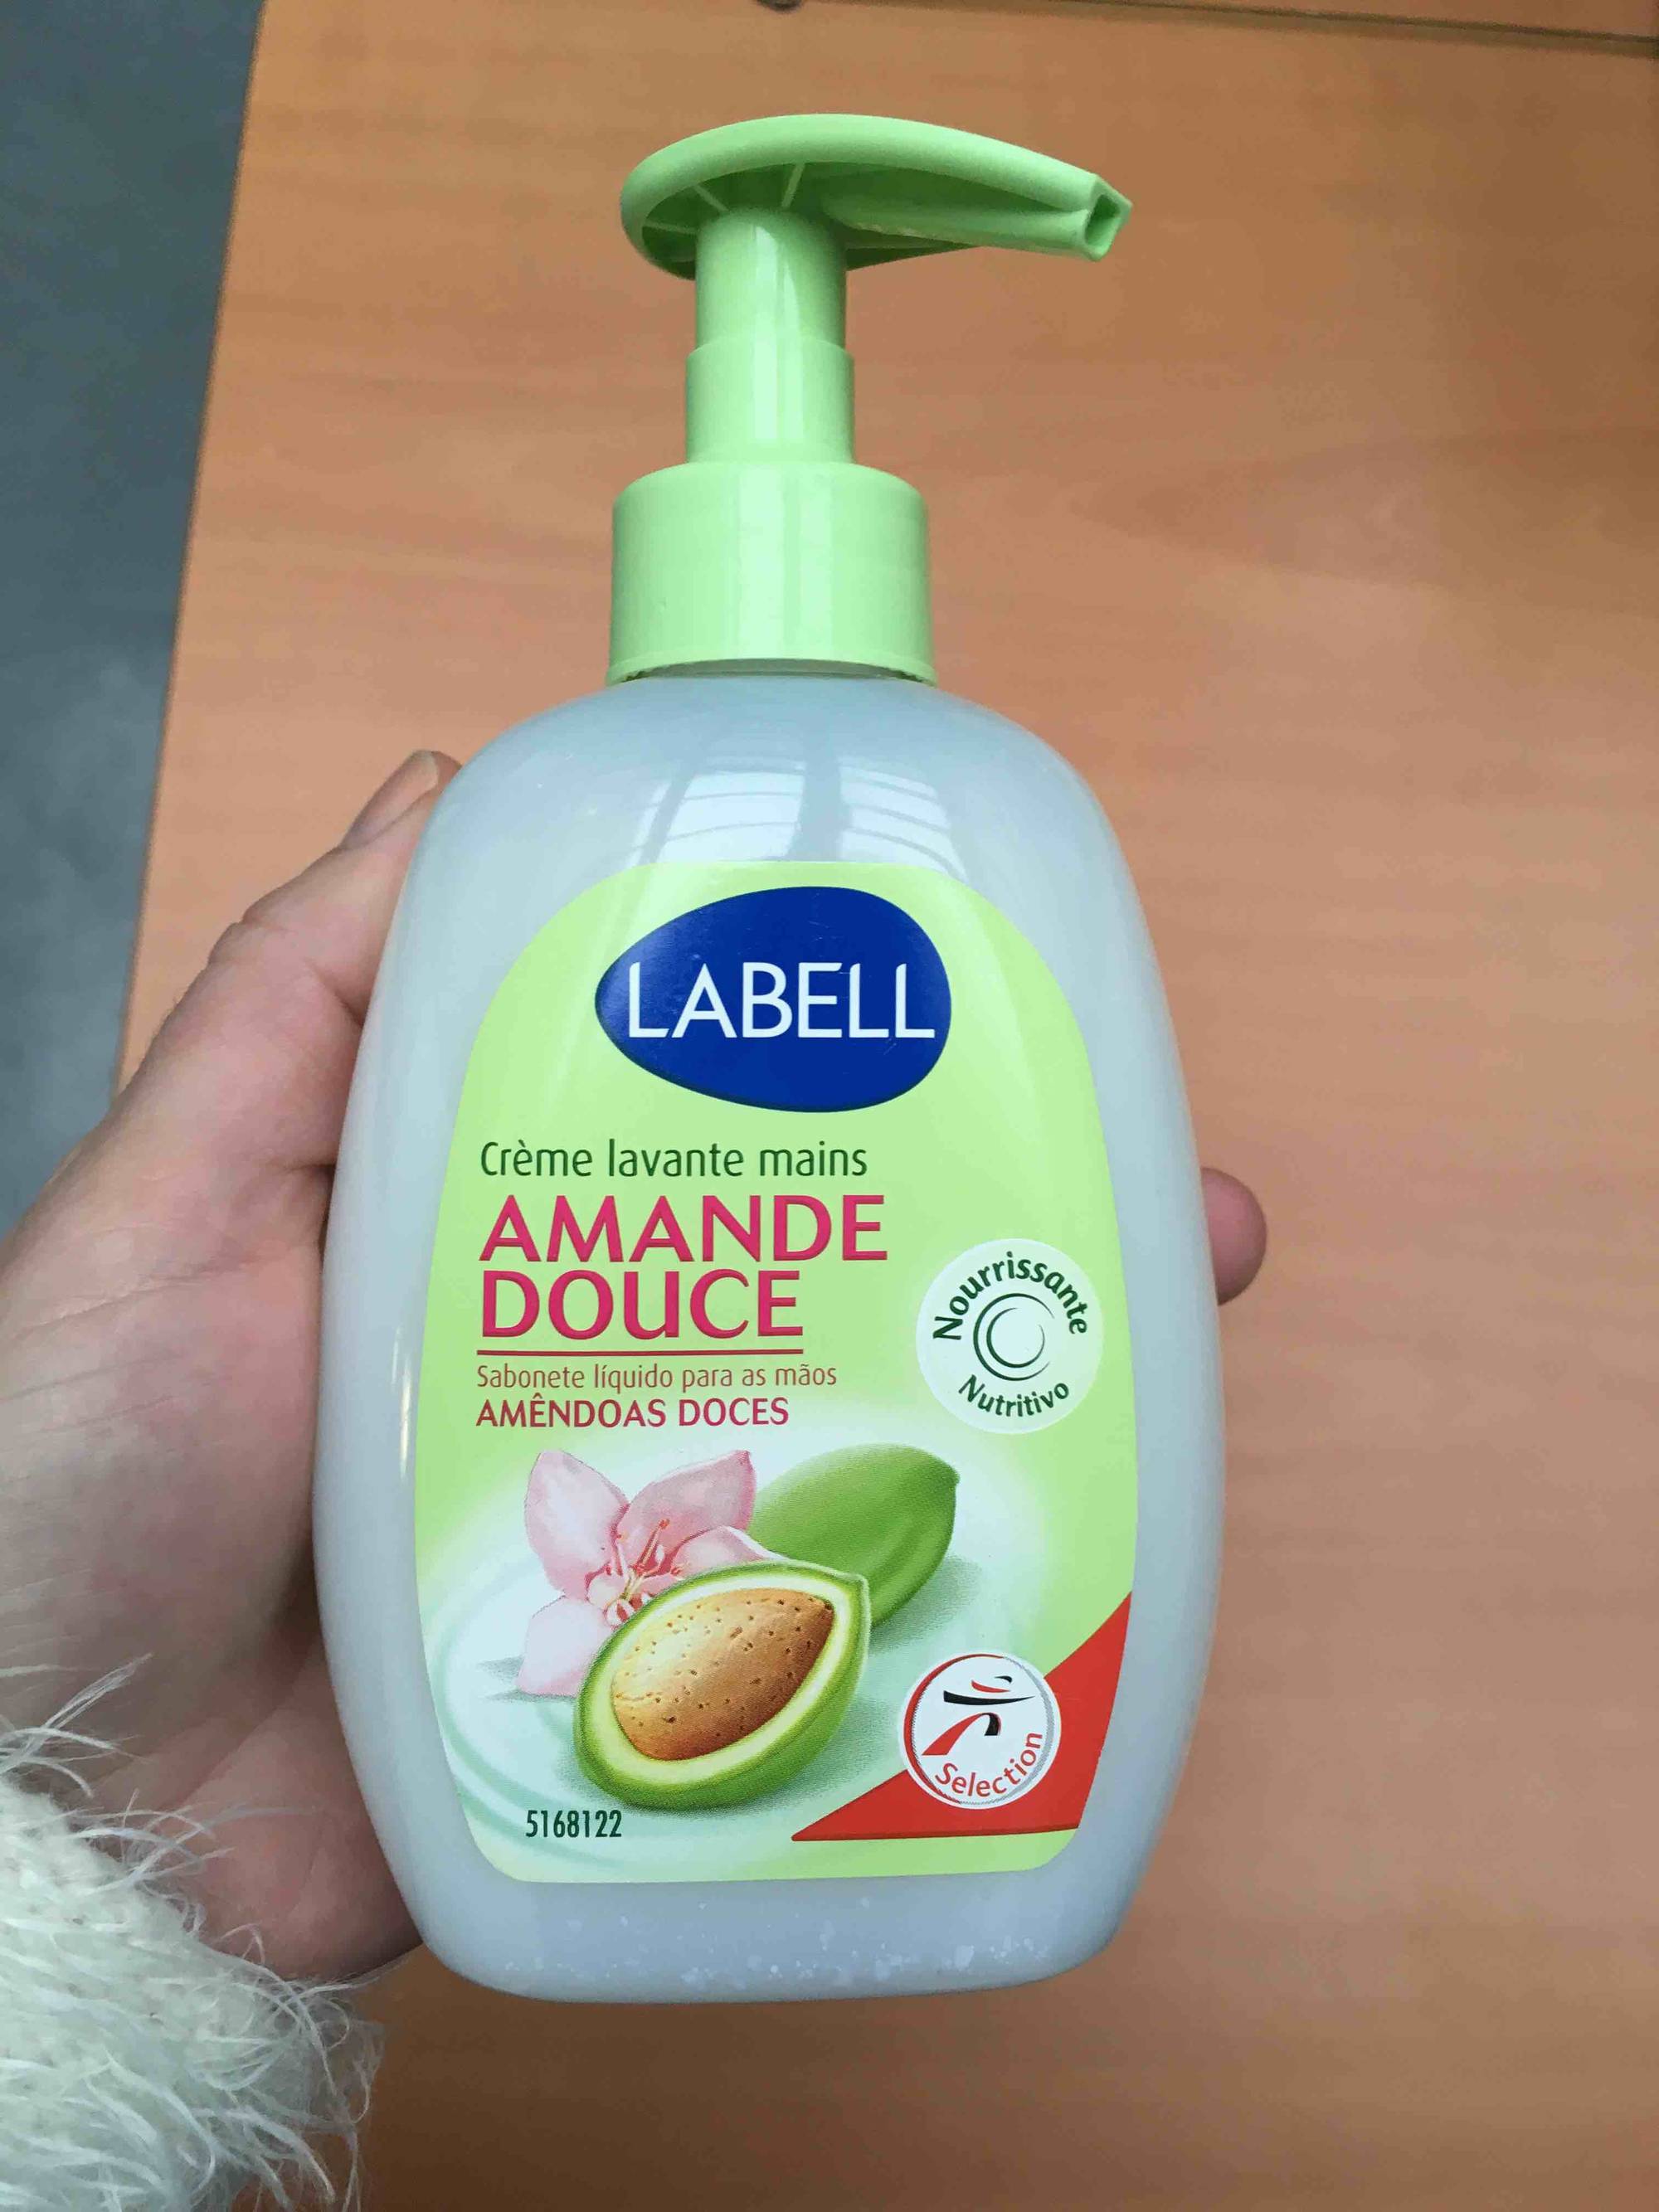 LABELL - Crème lavante mains amande douce